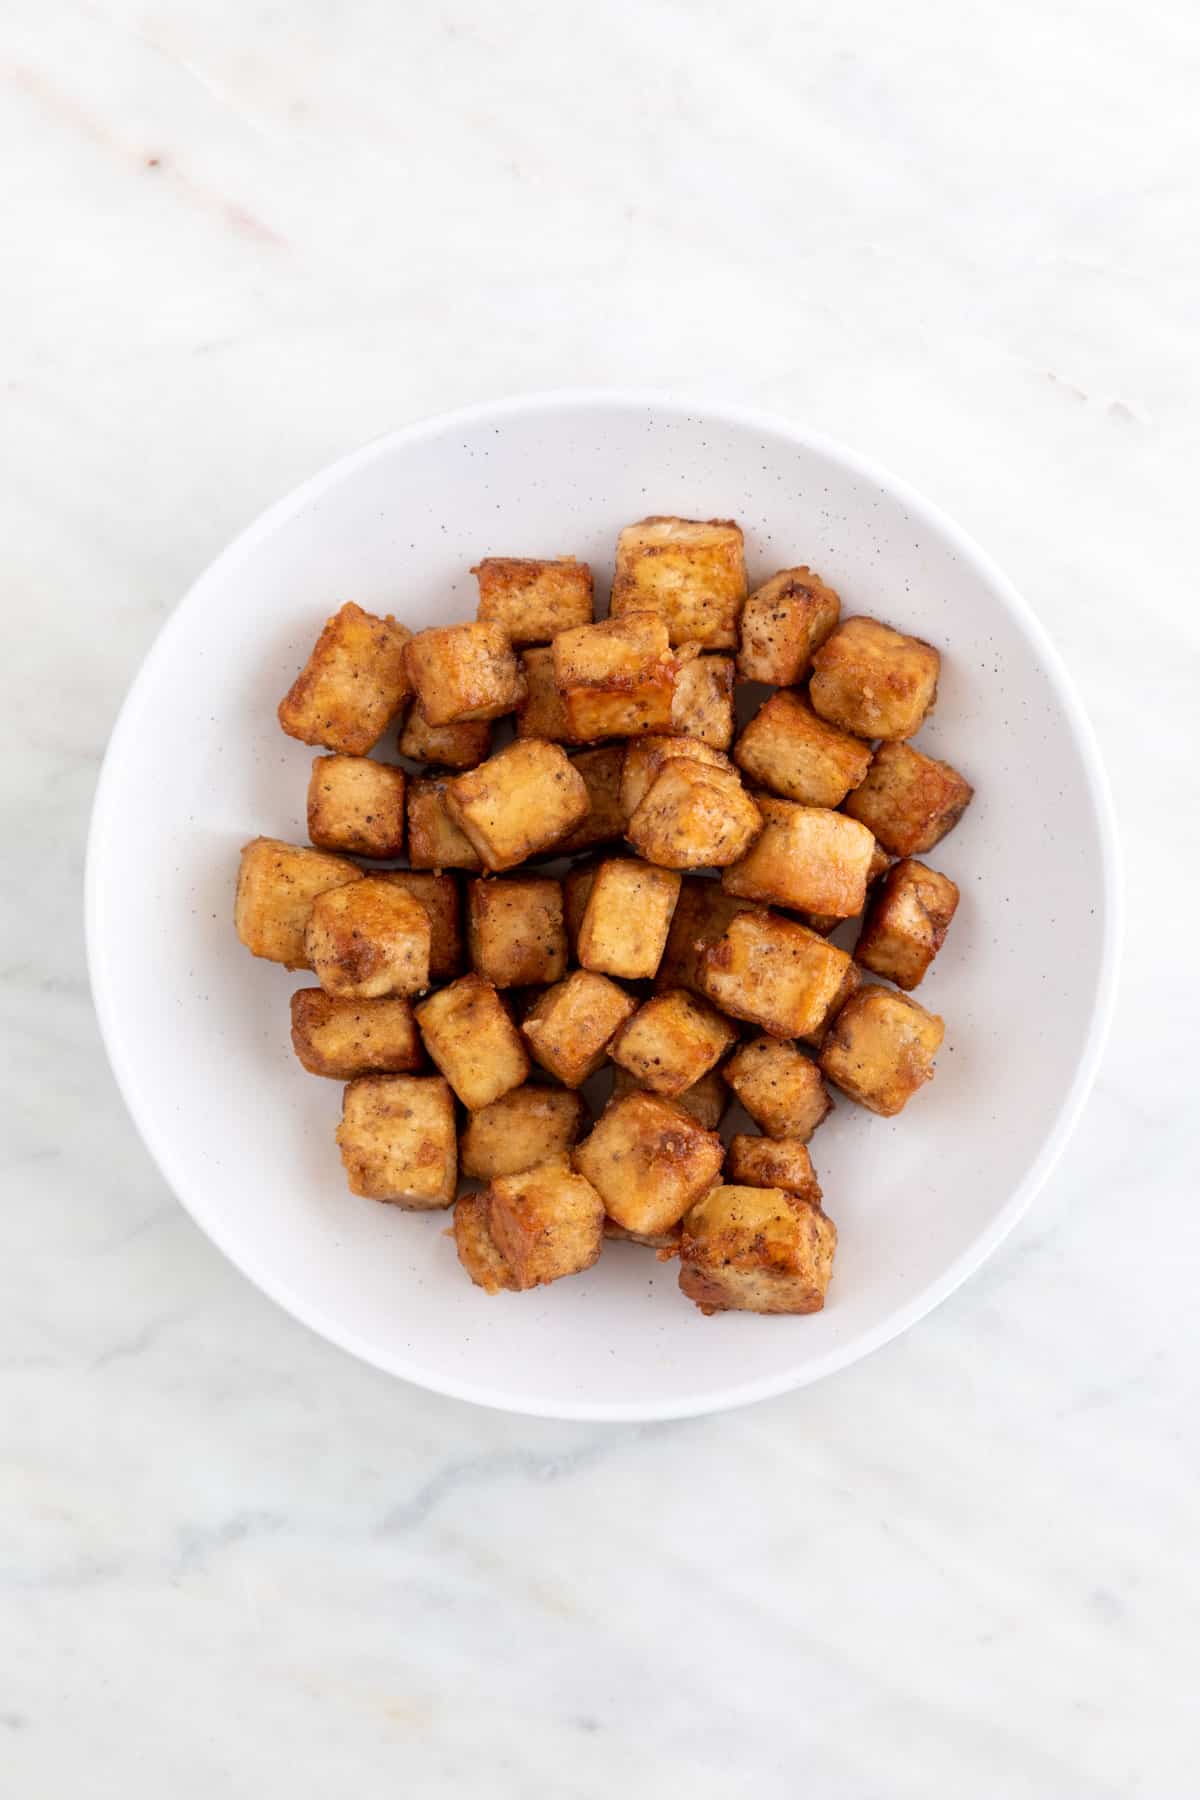 Fried tofu cubes on a plate.